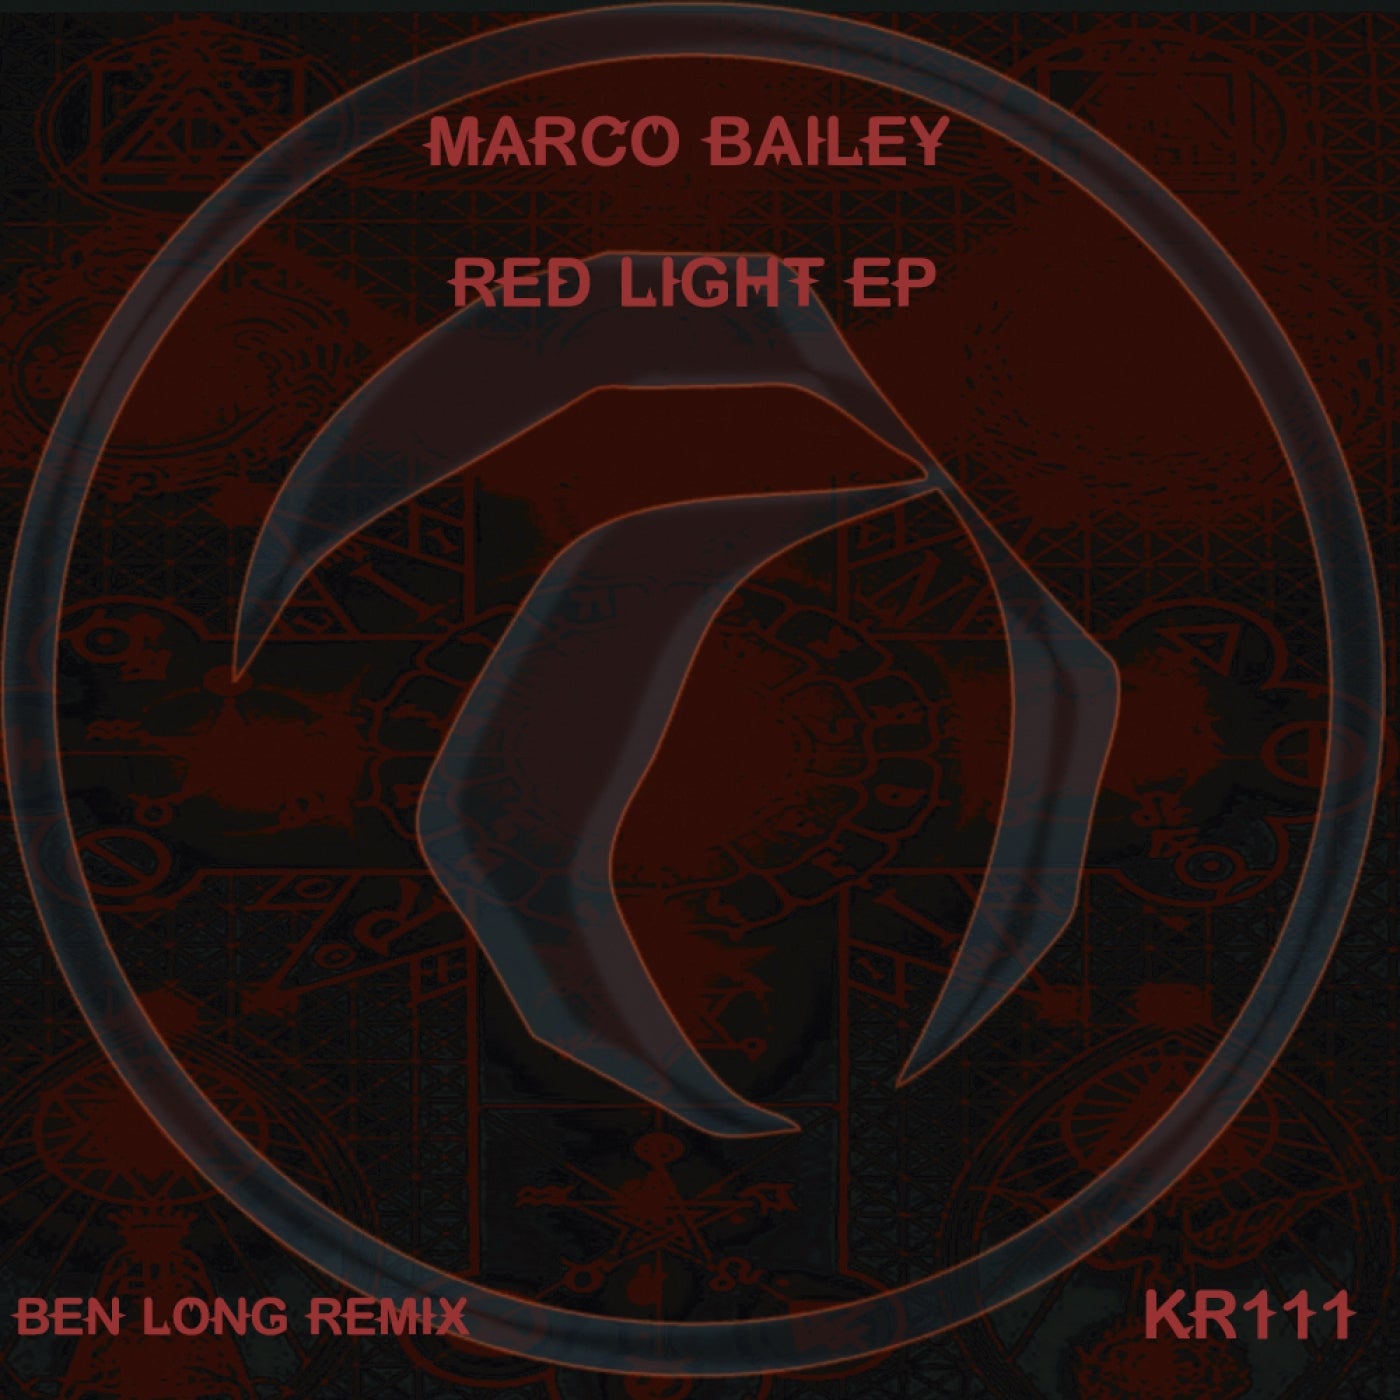 Redlight EP